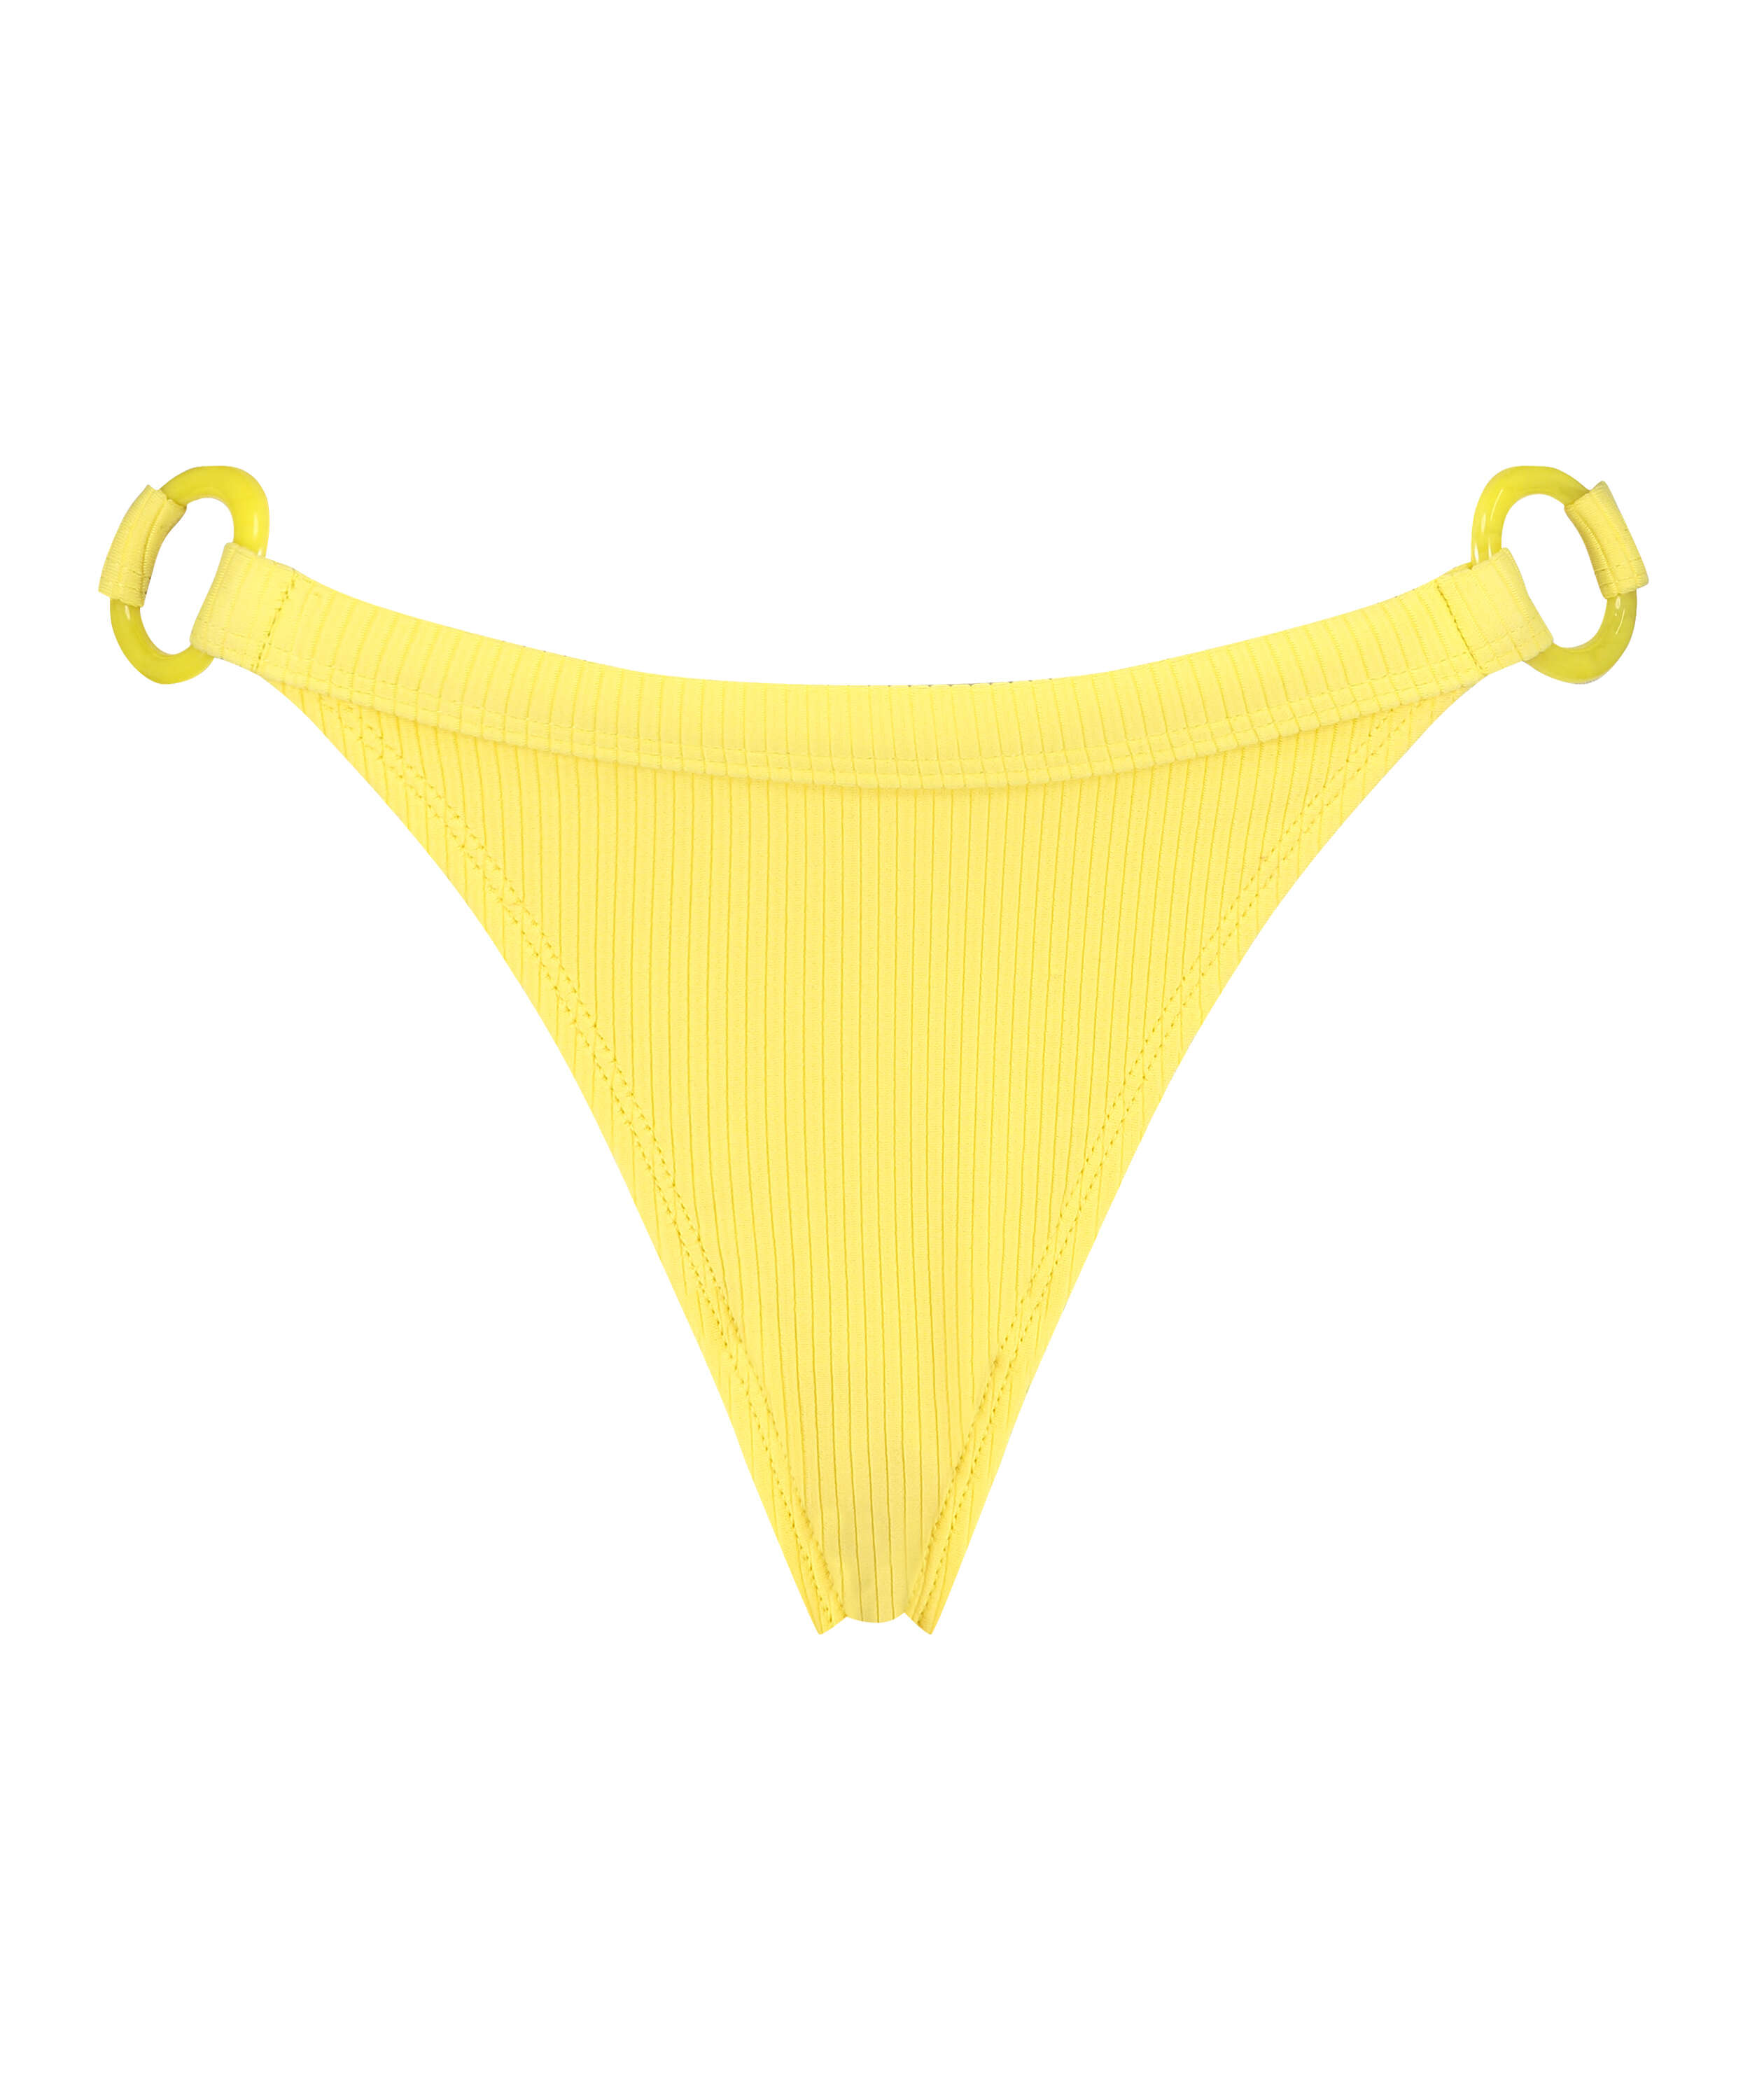 High-cut bikini bottoms Lana, Yellow, main